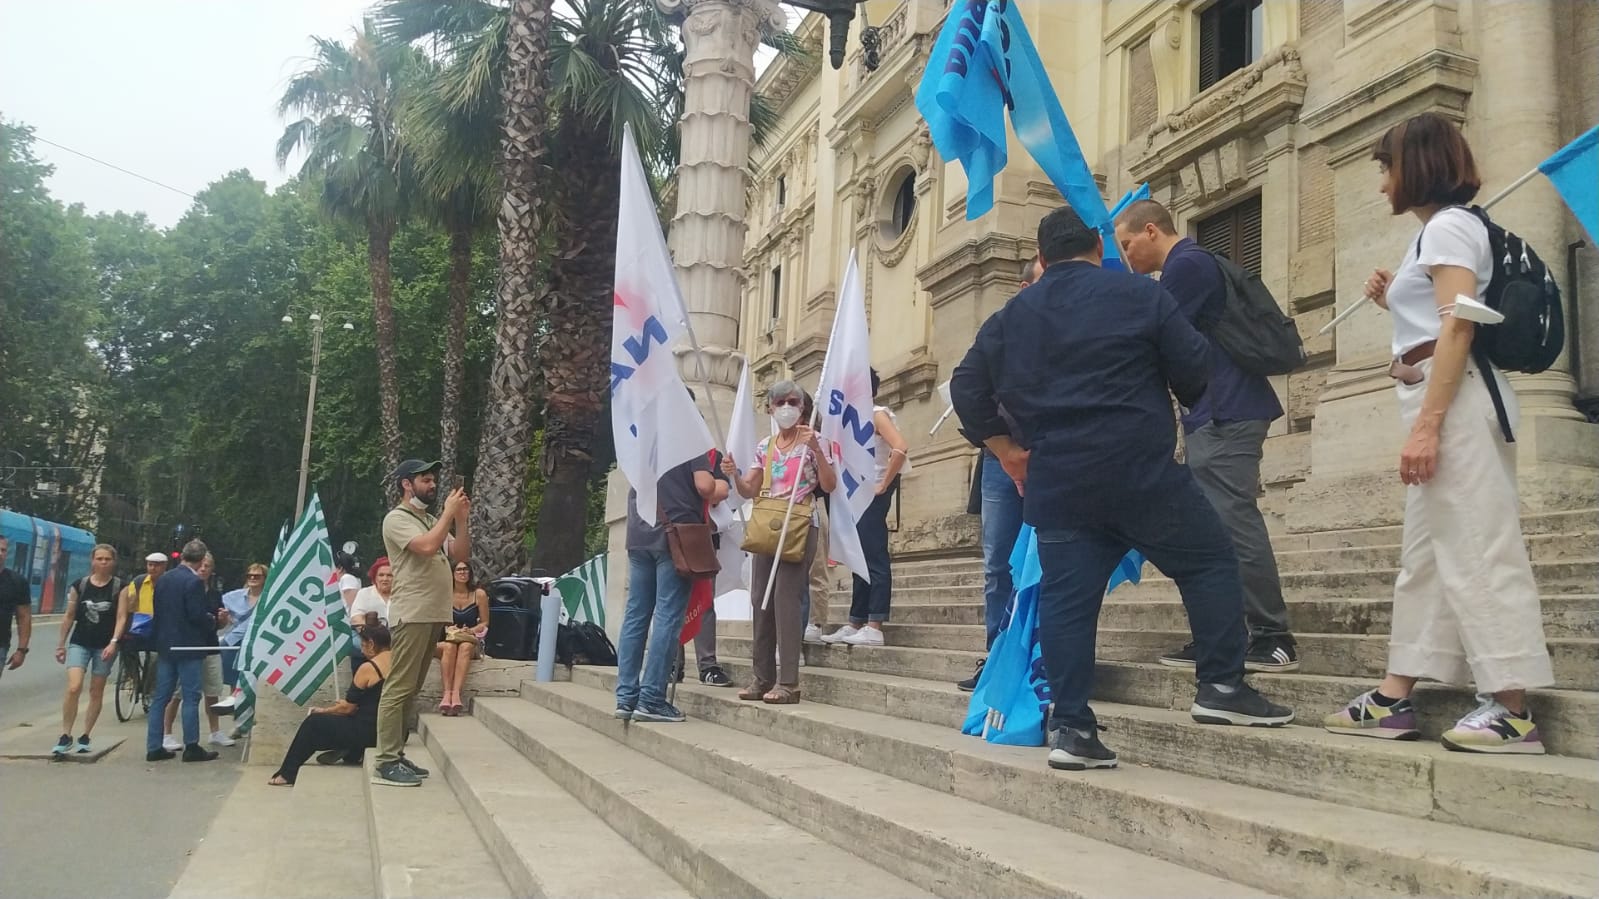 Docenti vincolati assunti da GPS protestano davanti agli uffici del Ministero dell’Istruzione, interviste esclusive